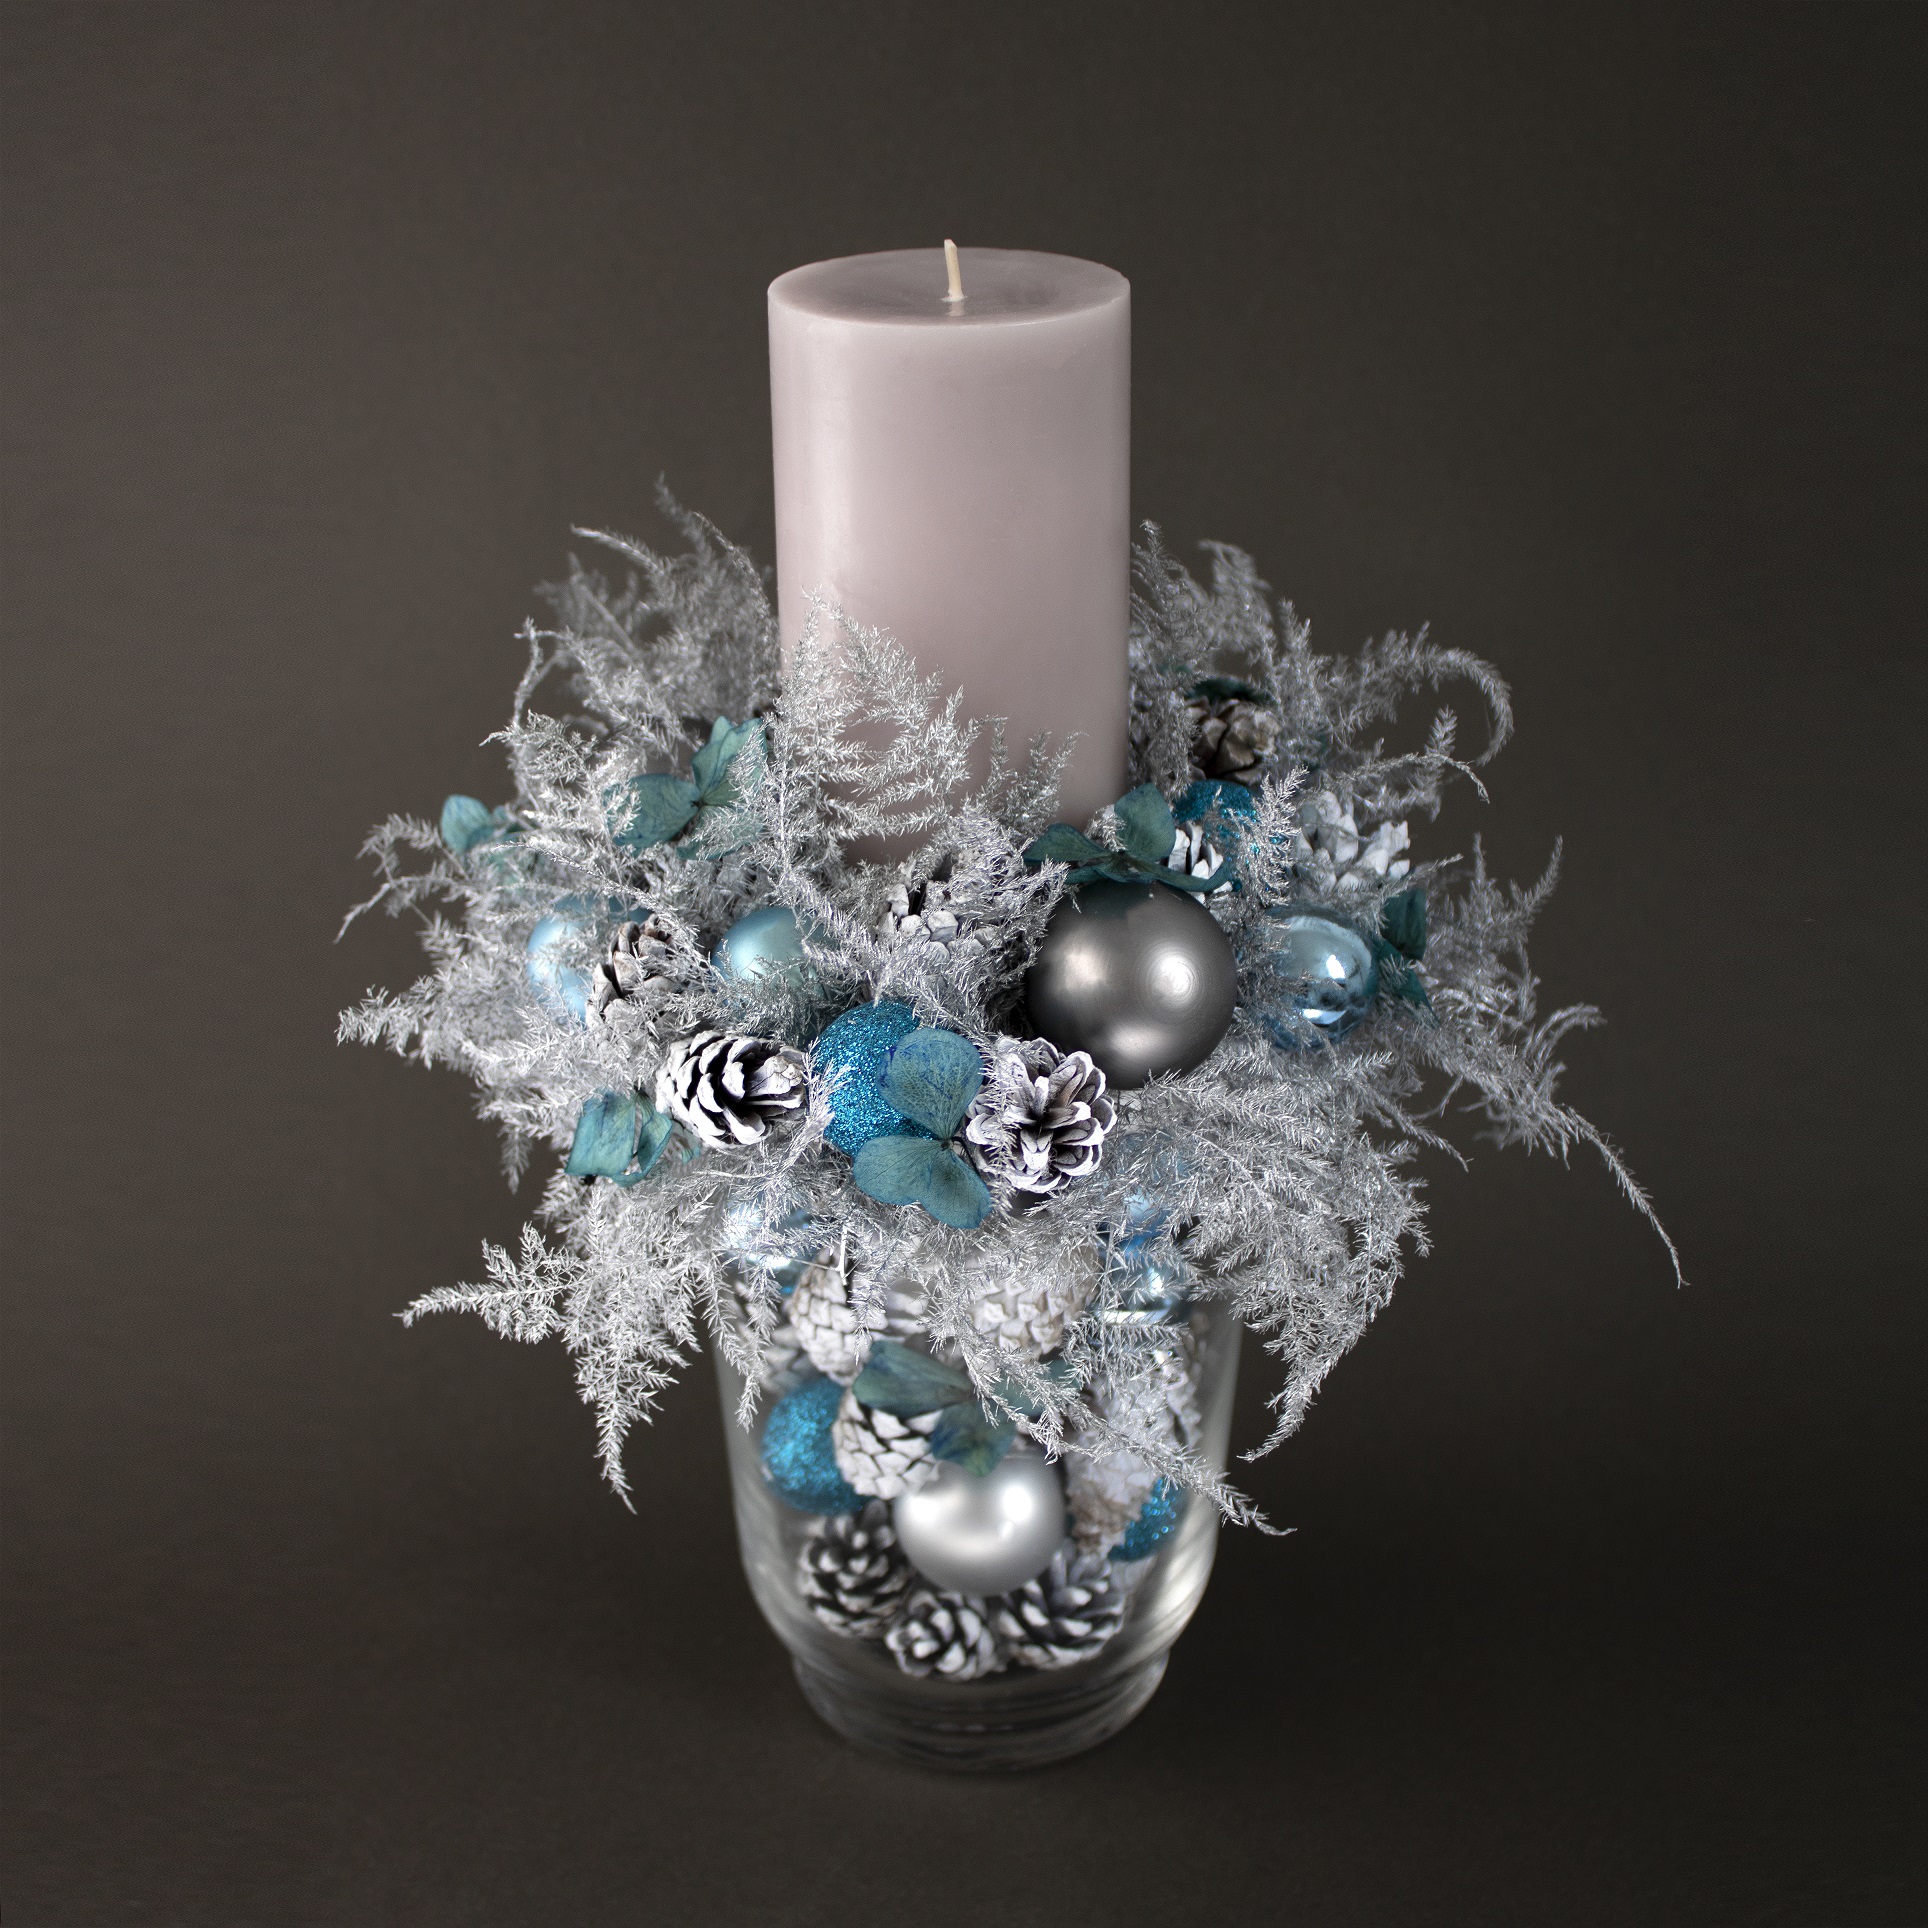 Новогодние композиции со свечами: праздничные идеи для дома и дачи,новогодний декор